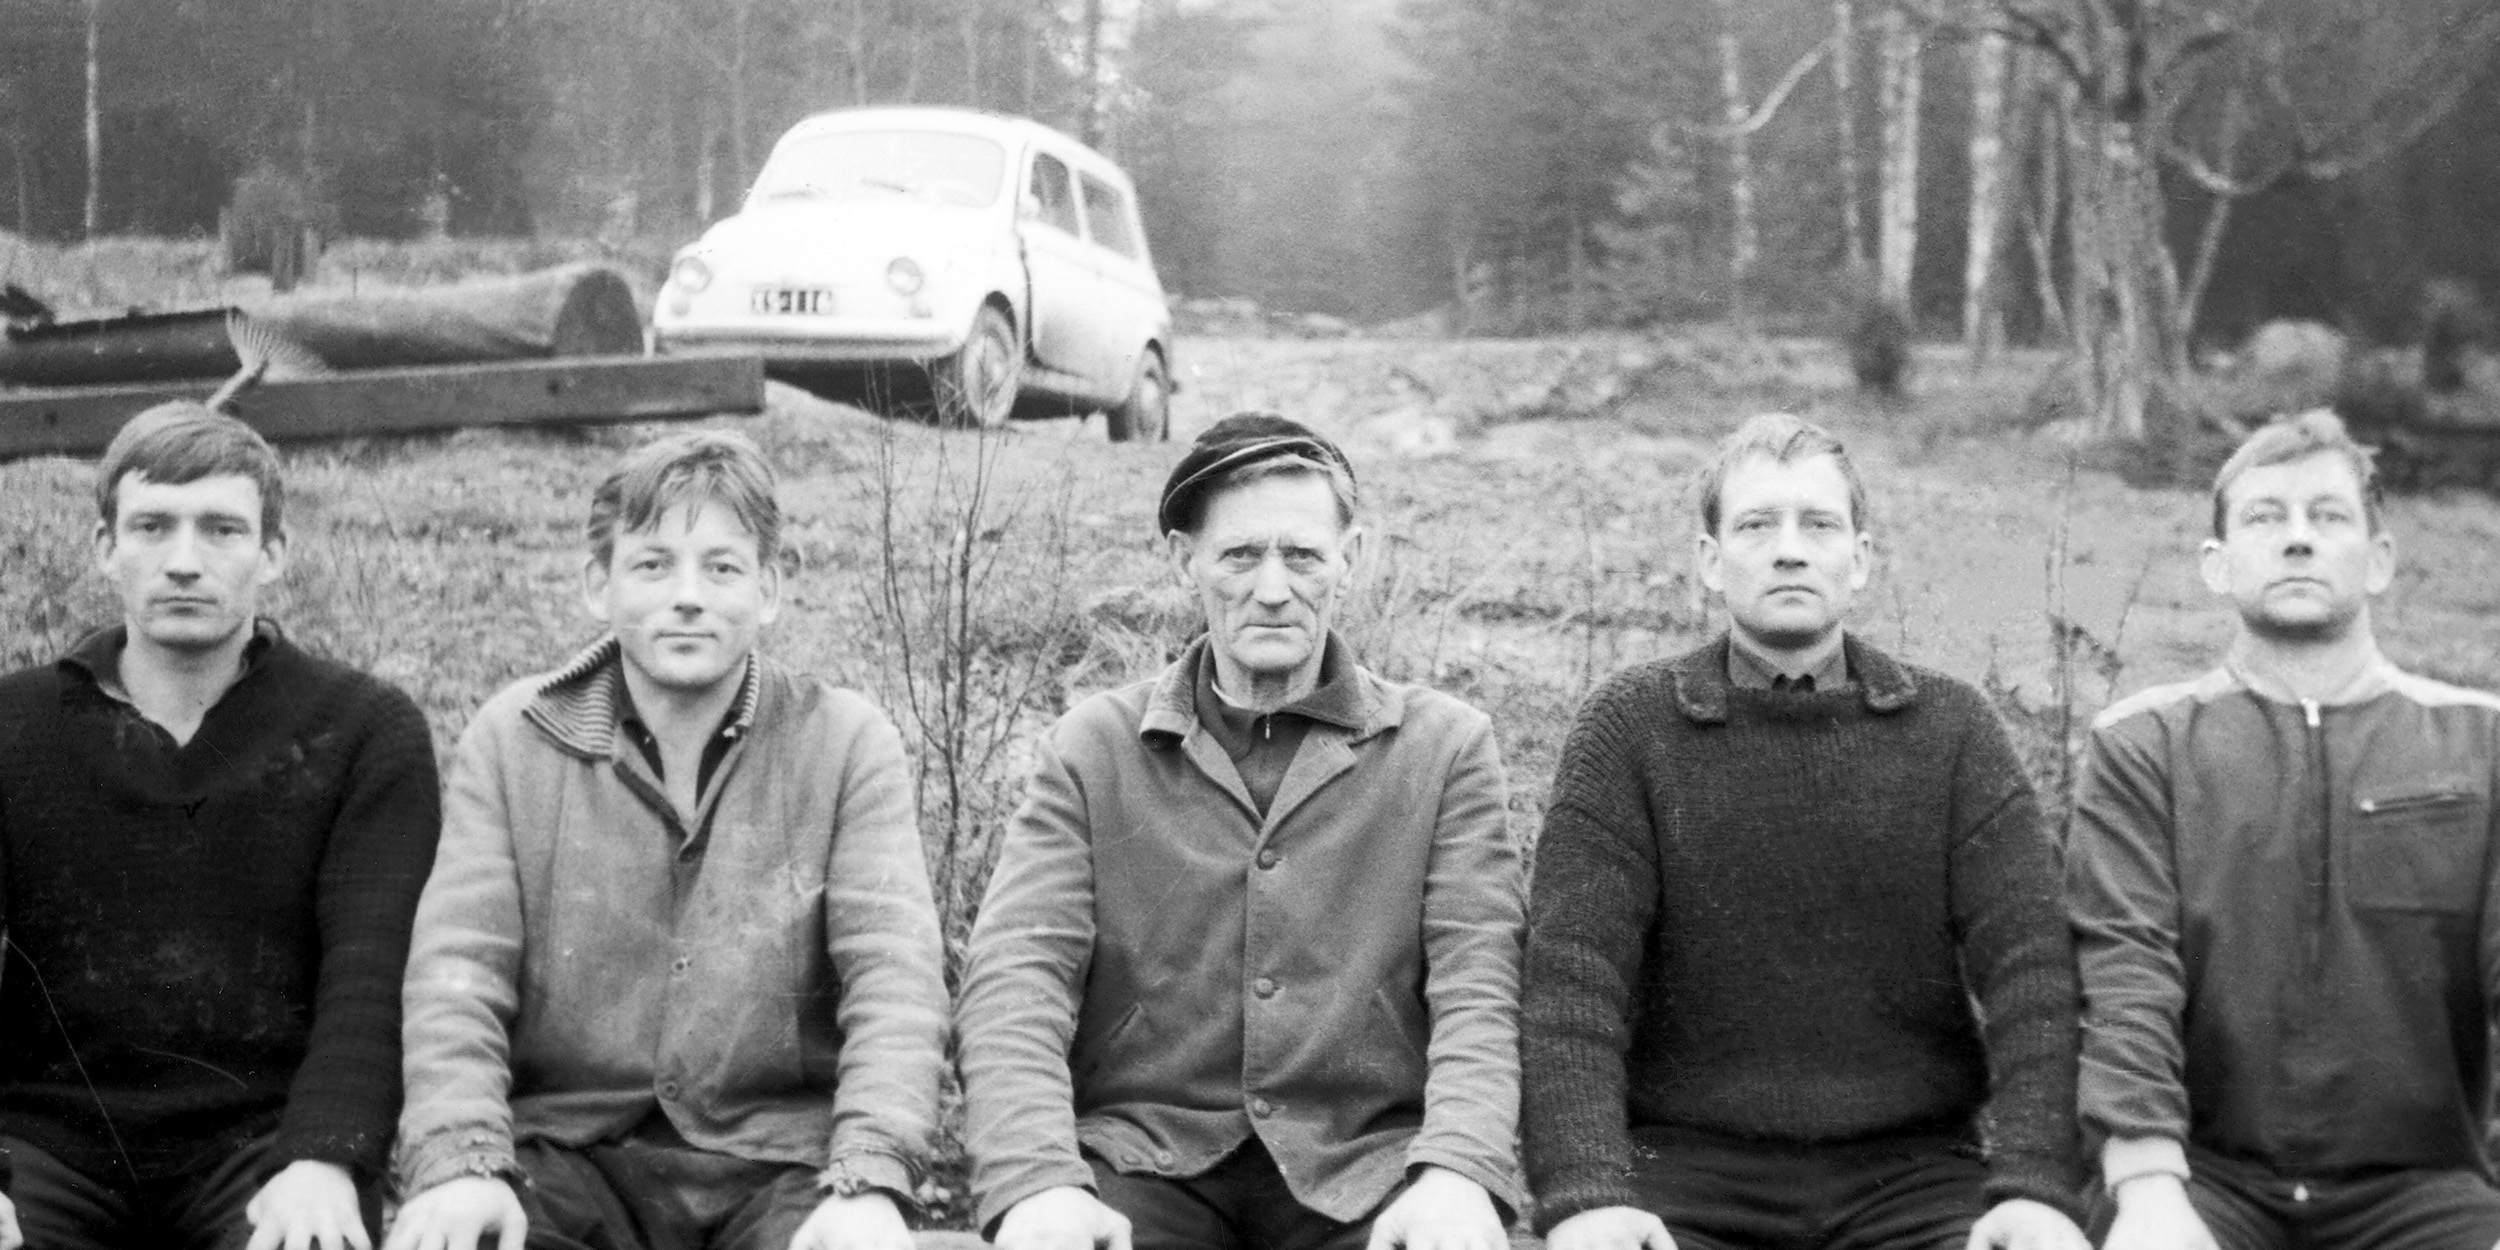 Tapperin taiteilijaveljekset, vasemmalta Yrjö, Kain, Harri ja Marko sekä keskellä isä-Vihtori kotitilallaan Juholassa 1960-luvulla. Kuva: Saarijärven museon kuva-arkisto.